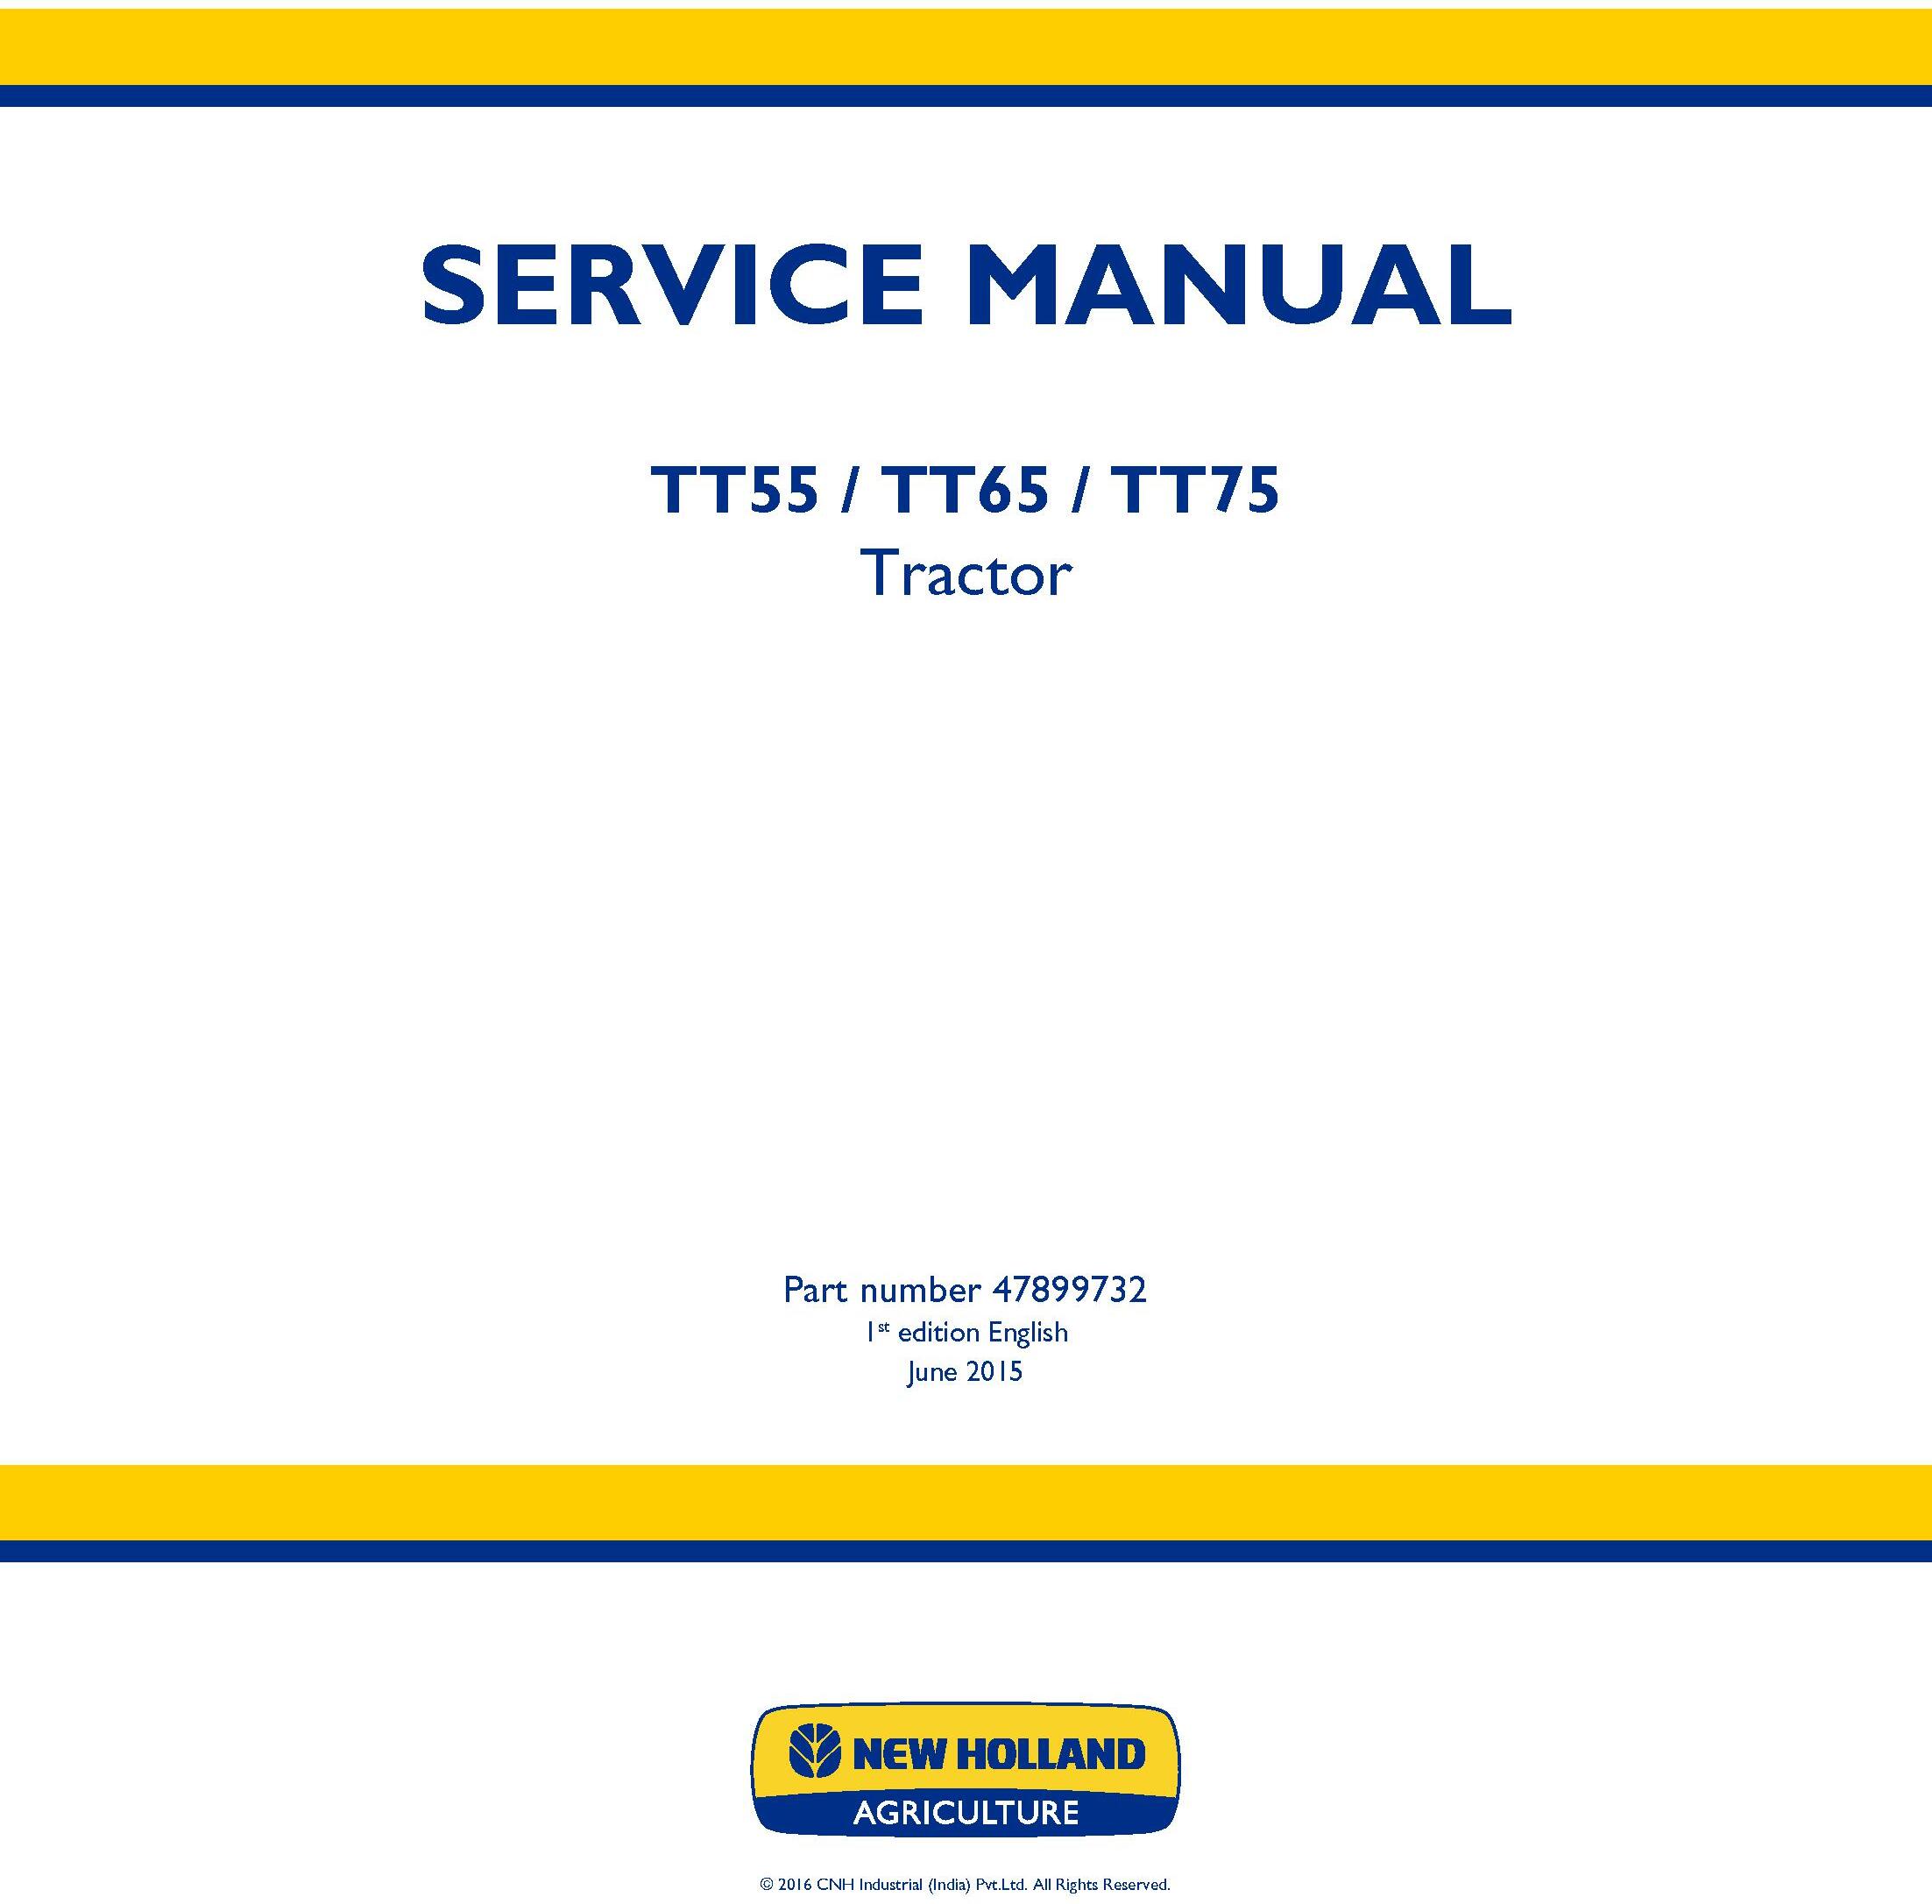 New Holland TT55, TT65, TT75 2WD and 4WD Tier 3 Tractors Service Manual